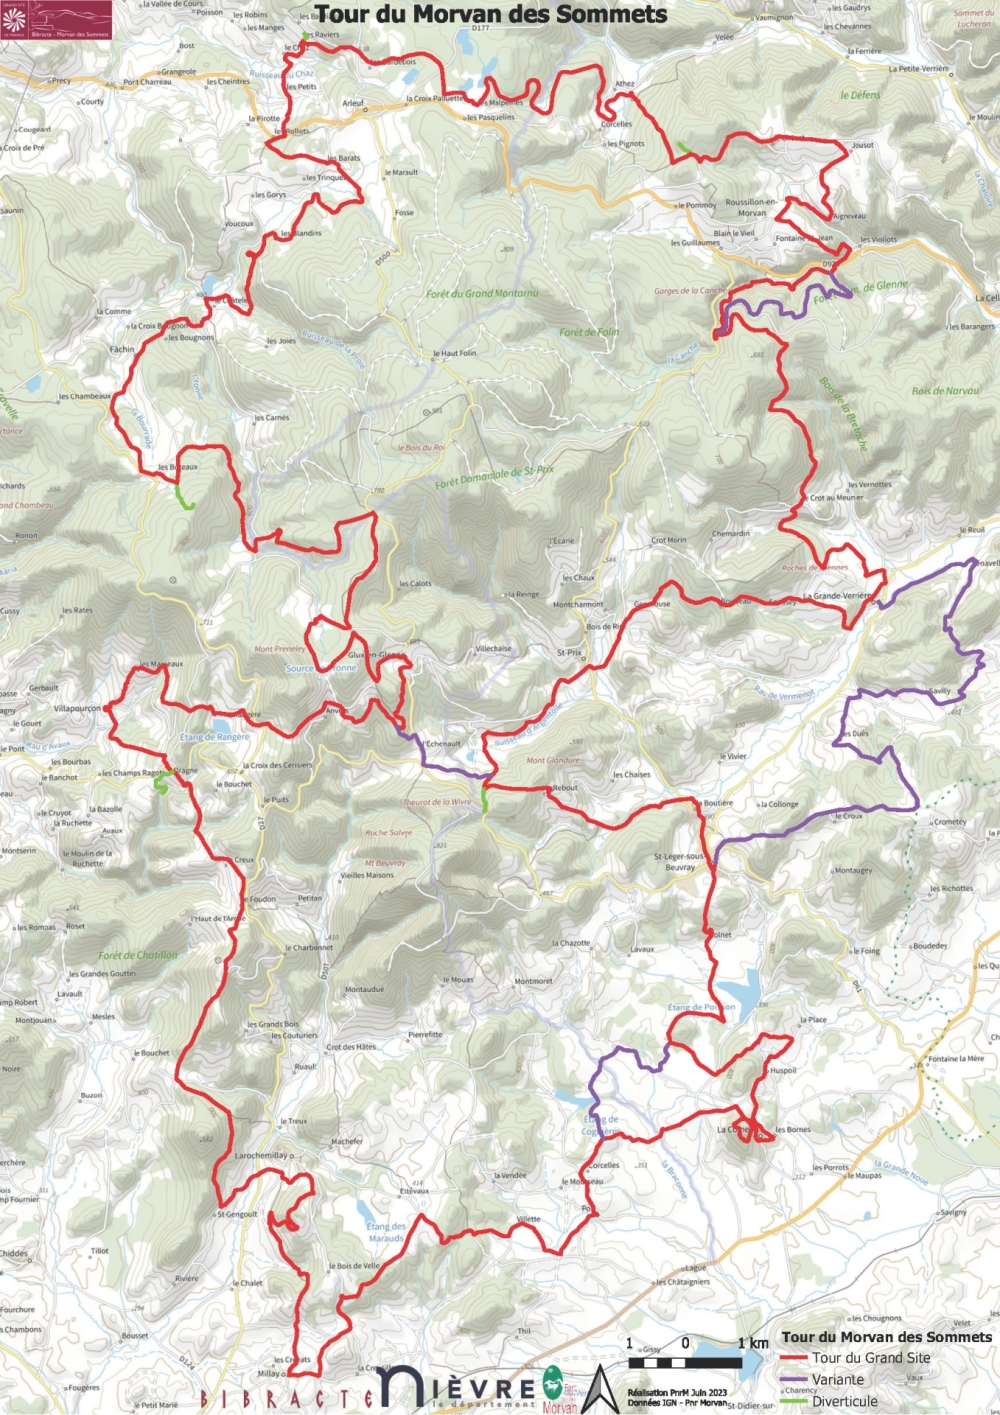 Le Tour du Morvan des Sommets, un nouvel itinéraire de randonnée à la découverte des paysages remarquables du Grand Site de France de Bibracte – Morvan des Sommets